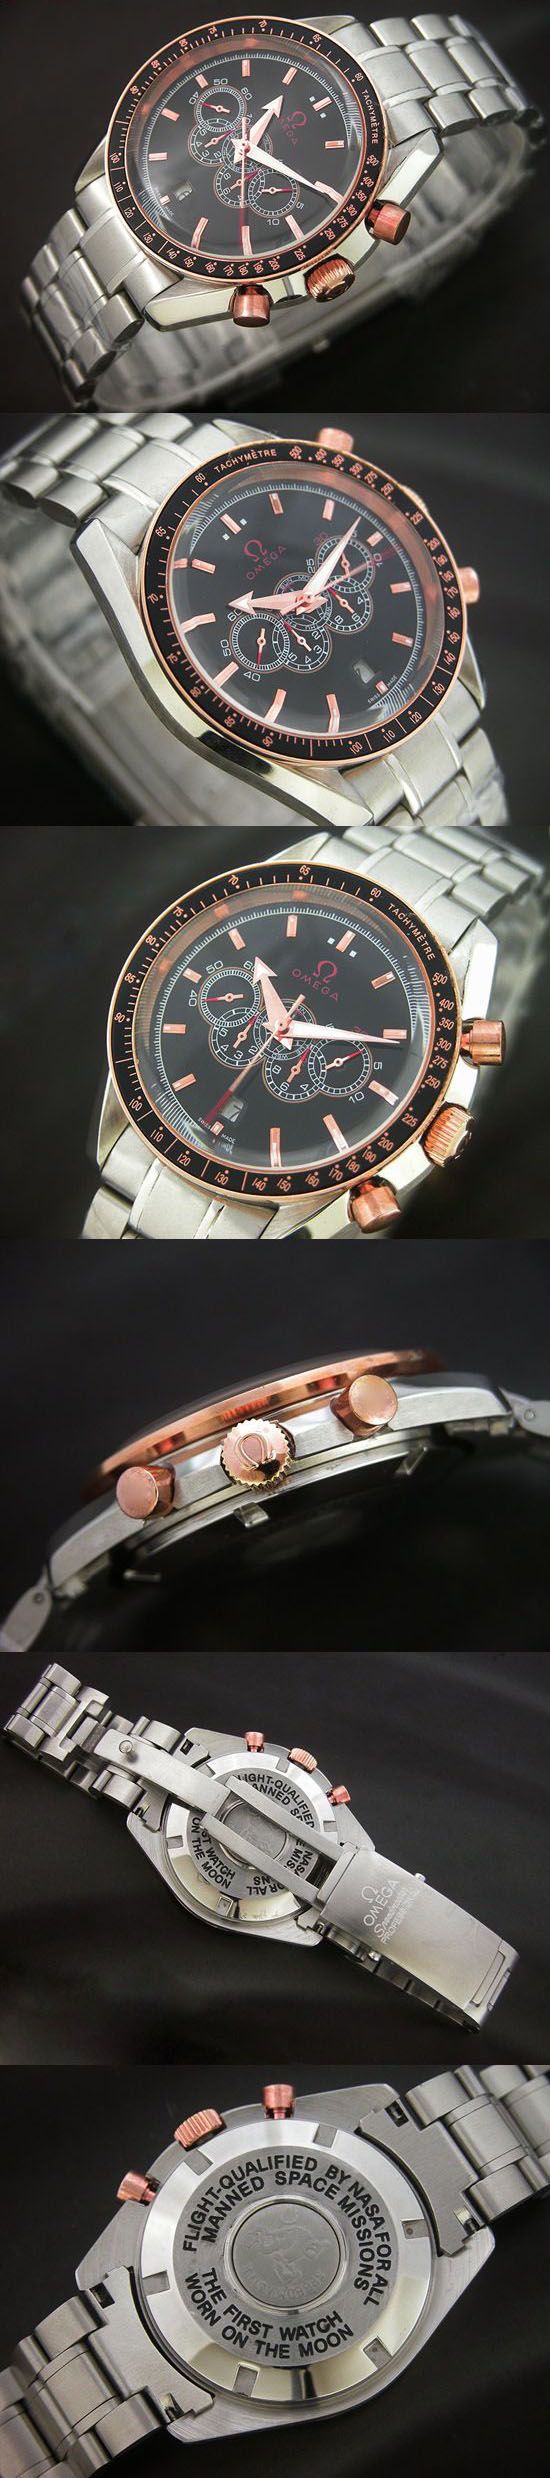 おしゃれなブランド時計がオメガ-スペシャリティーズ-OMEGA-321.30.44.52.01.001-ab-男性用を提供します.